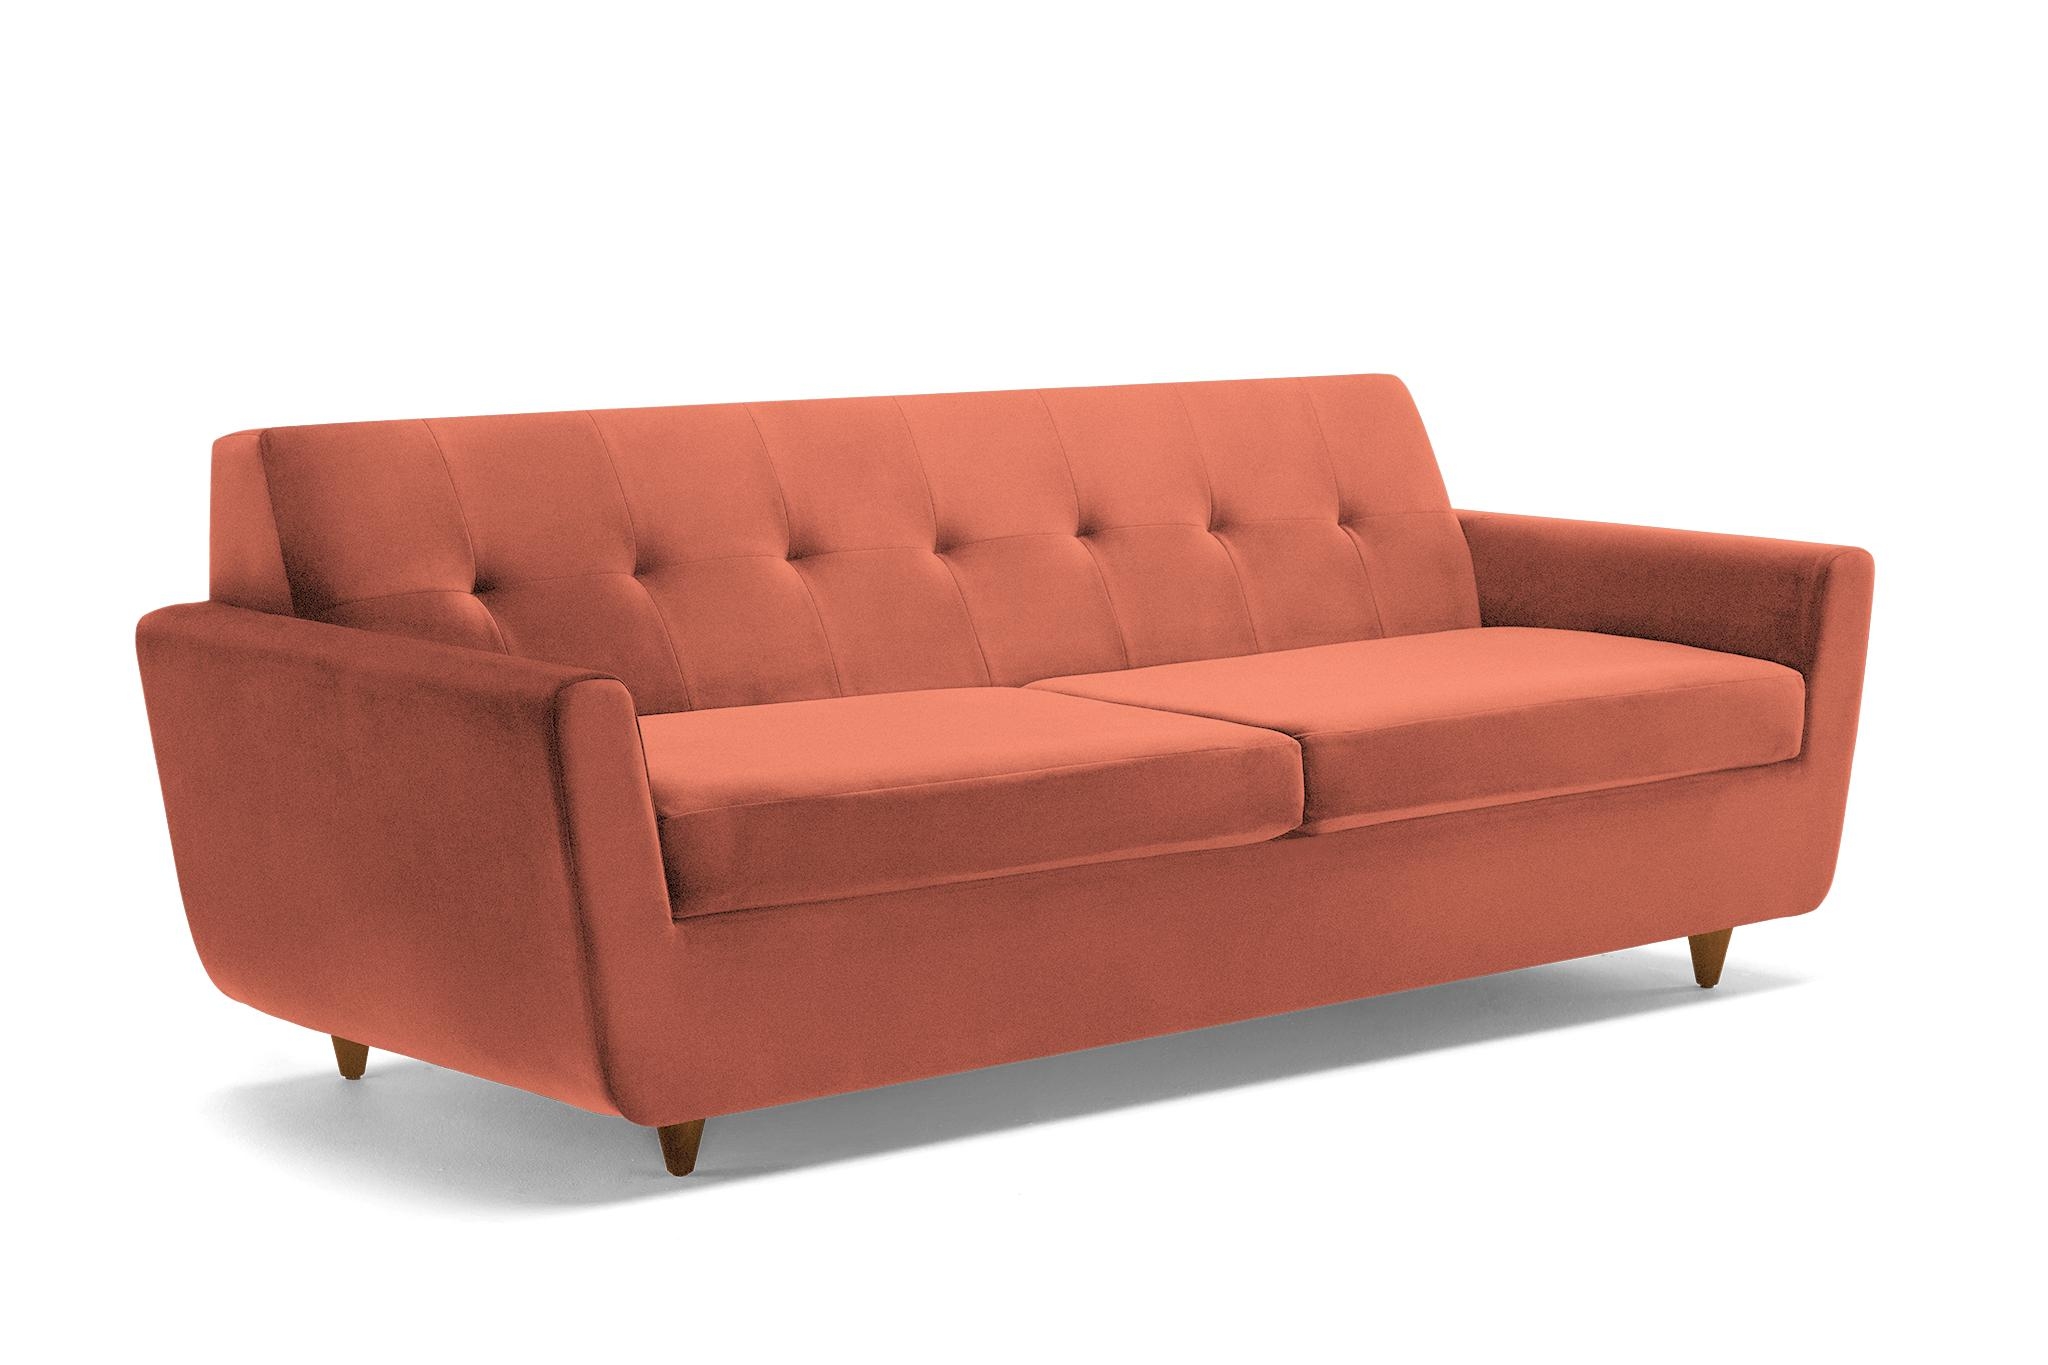 Orange Hughes Mid Century Modern Sofa with Storage - Key Largo Coral - Mocha - Image 1